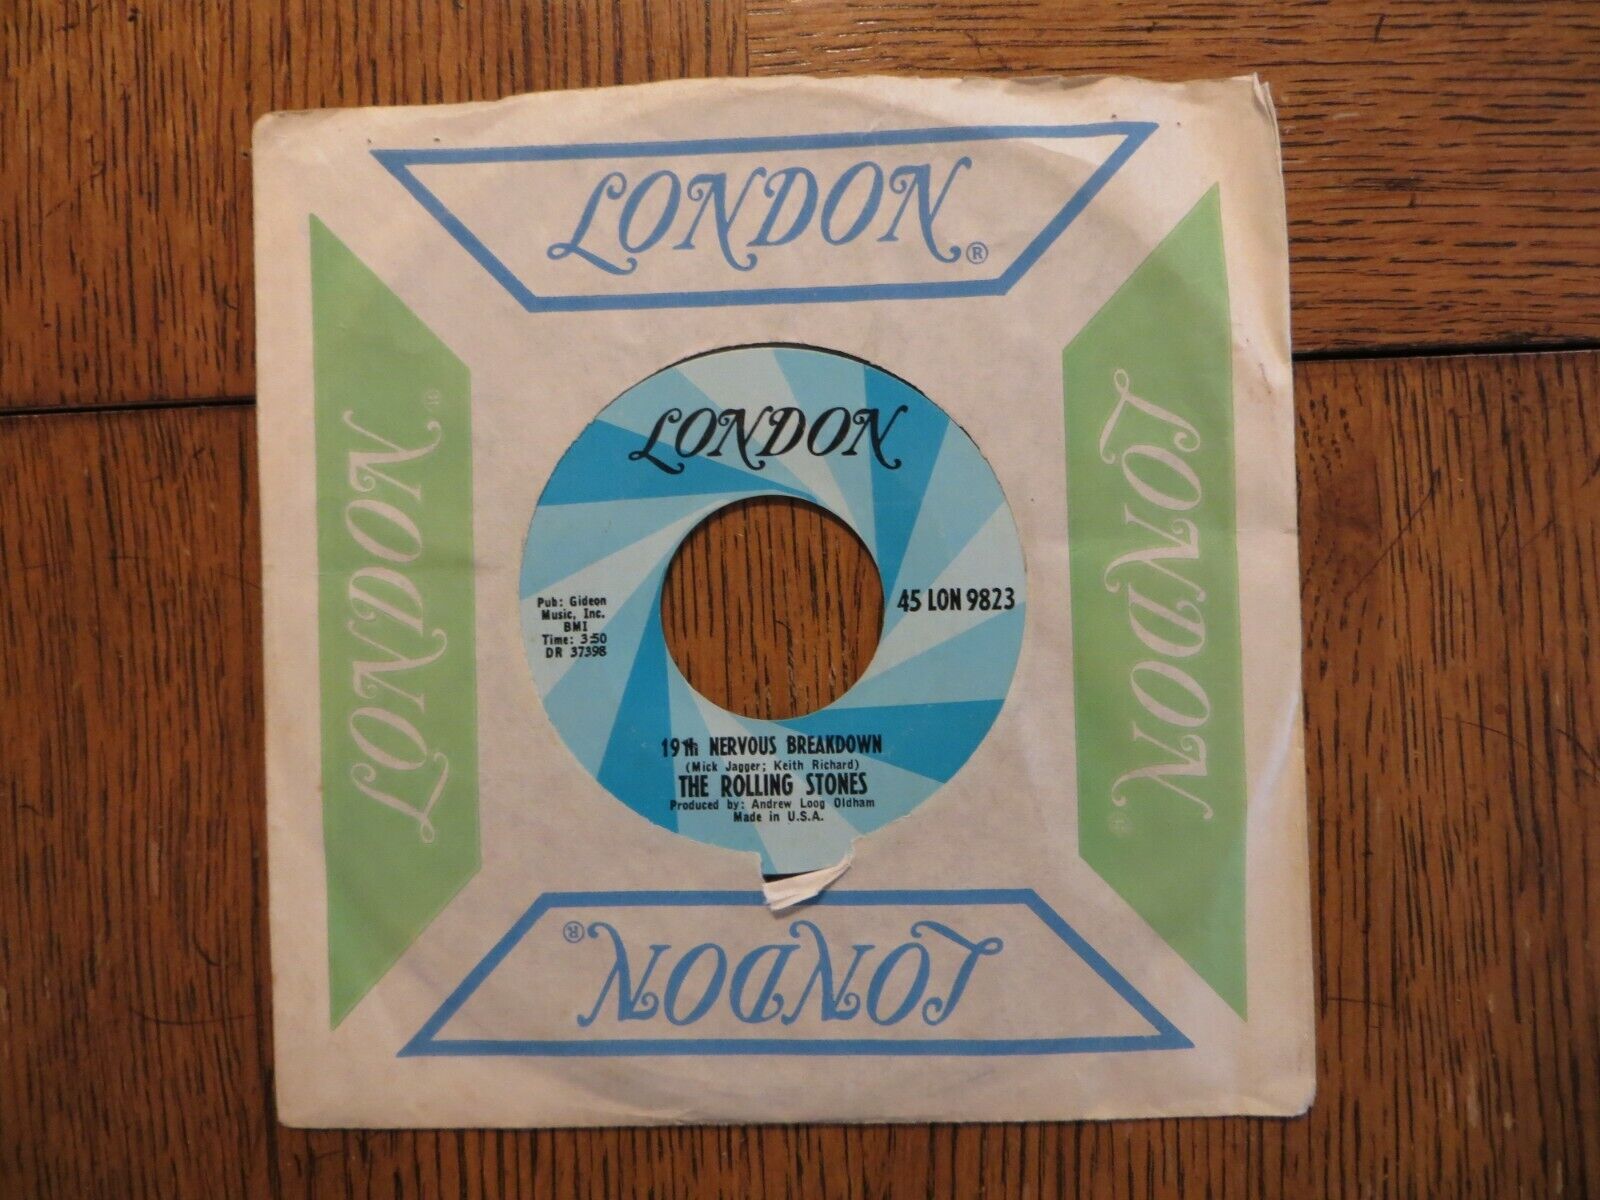 Rolling Stones – 19th Nervous Breakdown - 1966 - London 45 LON 9823 7\